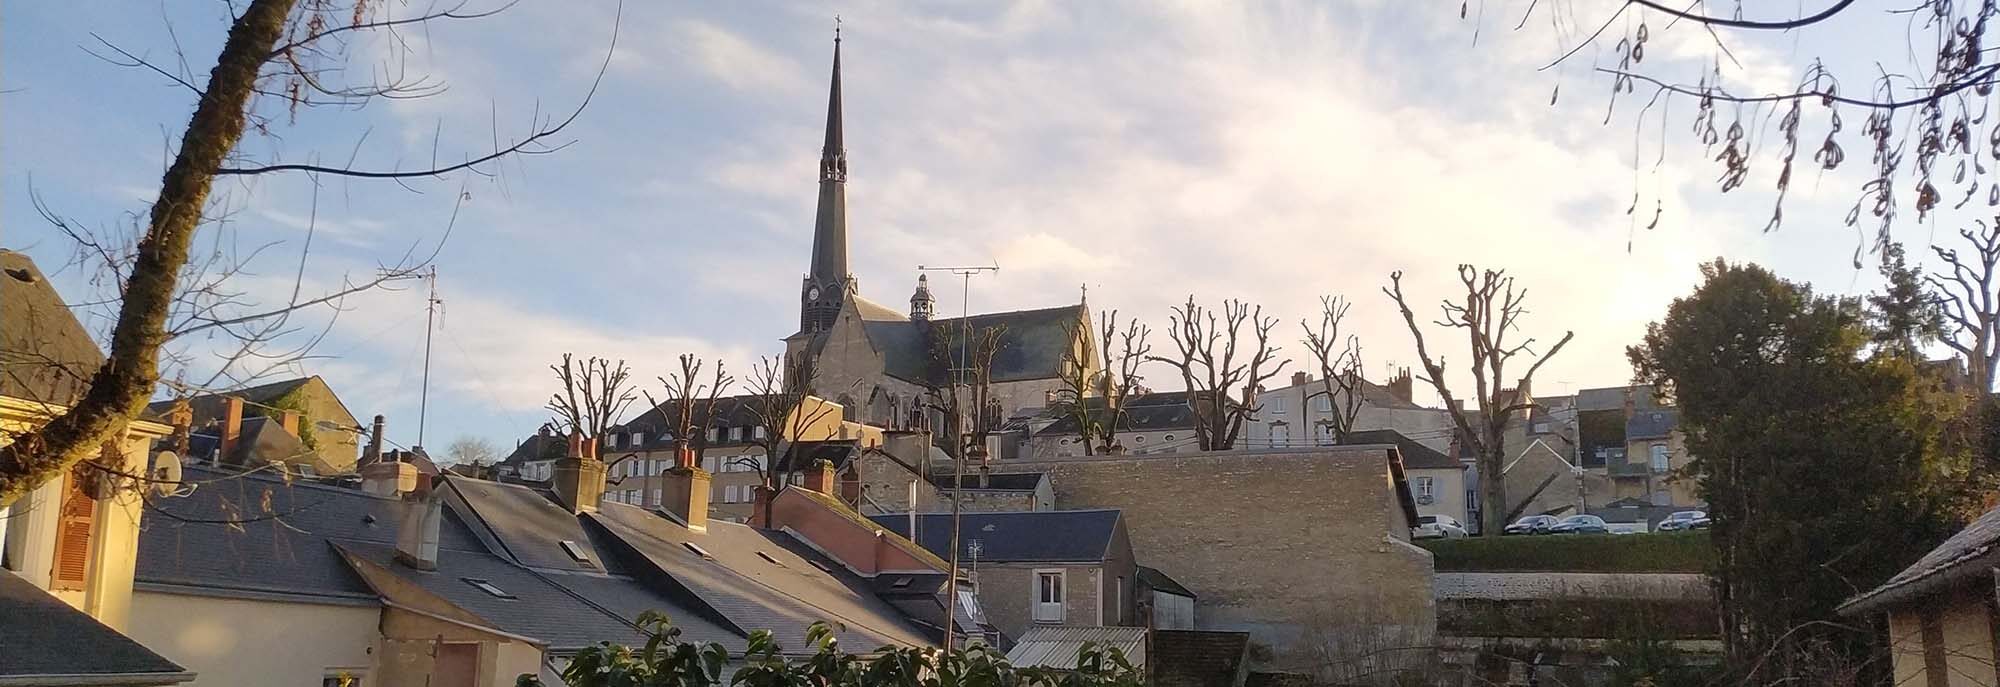 Église de Pithiviers, habitations, soleil hivernal.